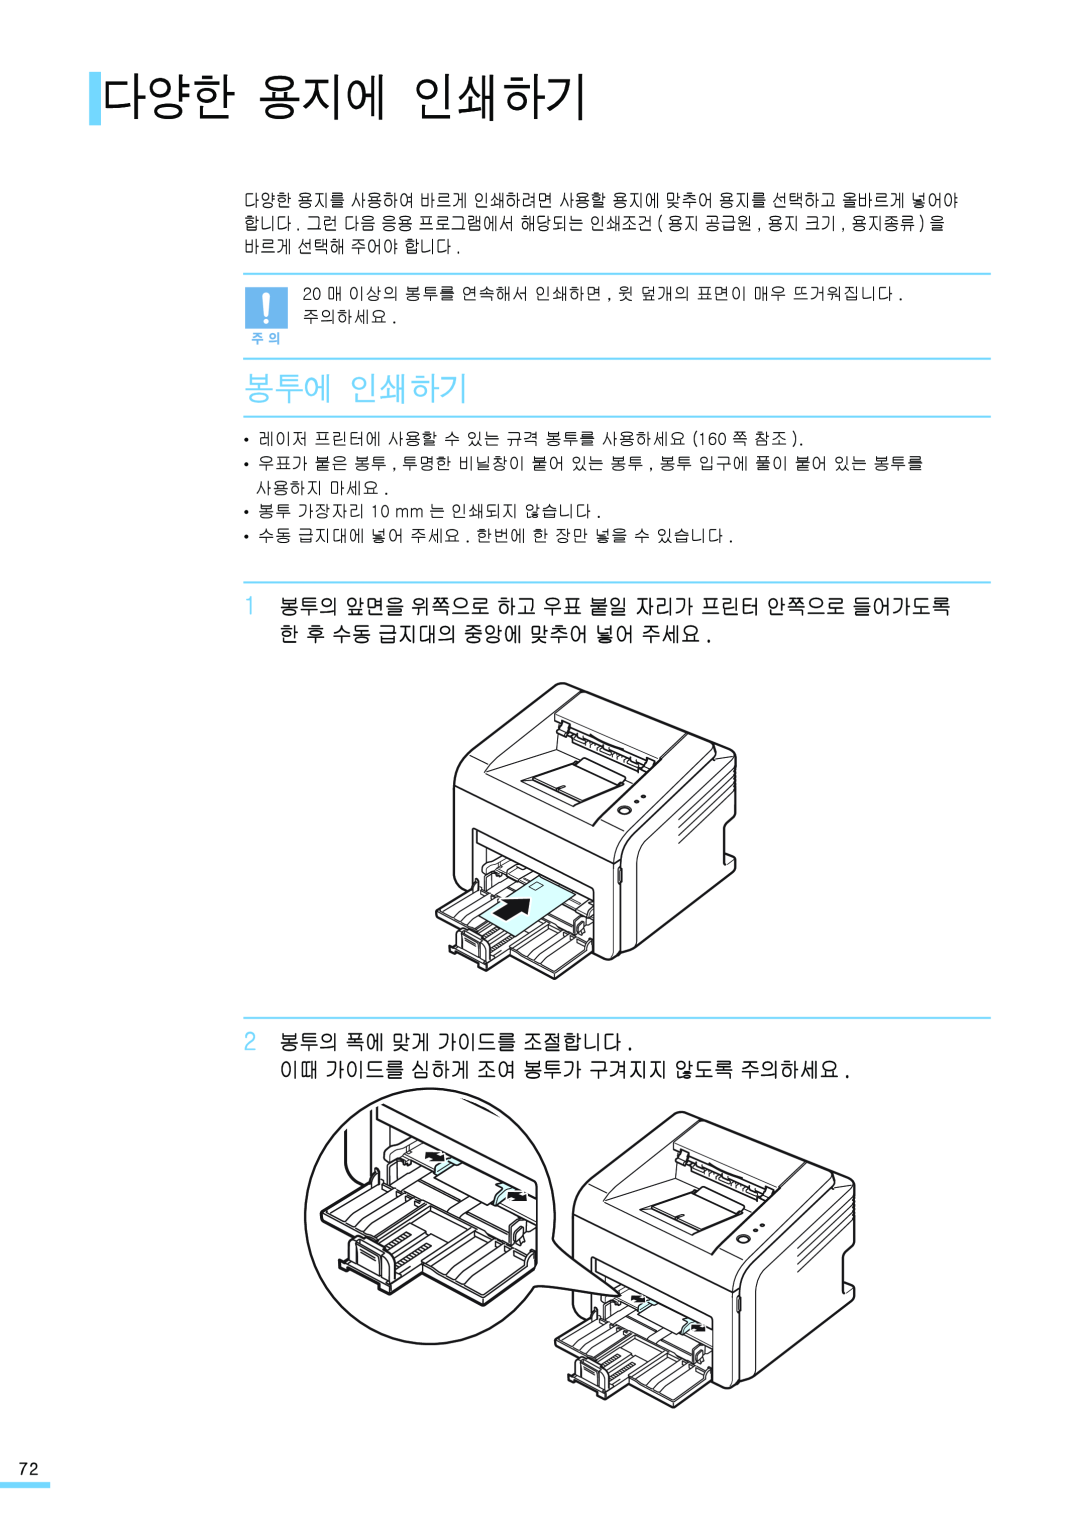 Samsung ML-2571N manual 다양한 용지에 인쇄하기, 봉투에 인쇄하기, 1 봉투의 앞면을 위쪽으로 하고 우표 붙일 자리가 프린터 안쪽으로 들어가도록 한 후 수동 급지대의 중앙에 맞추어 넣어 주세요 